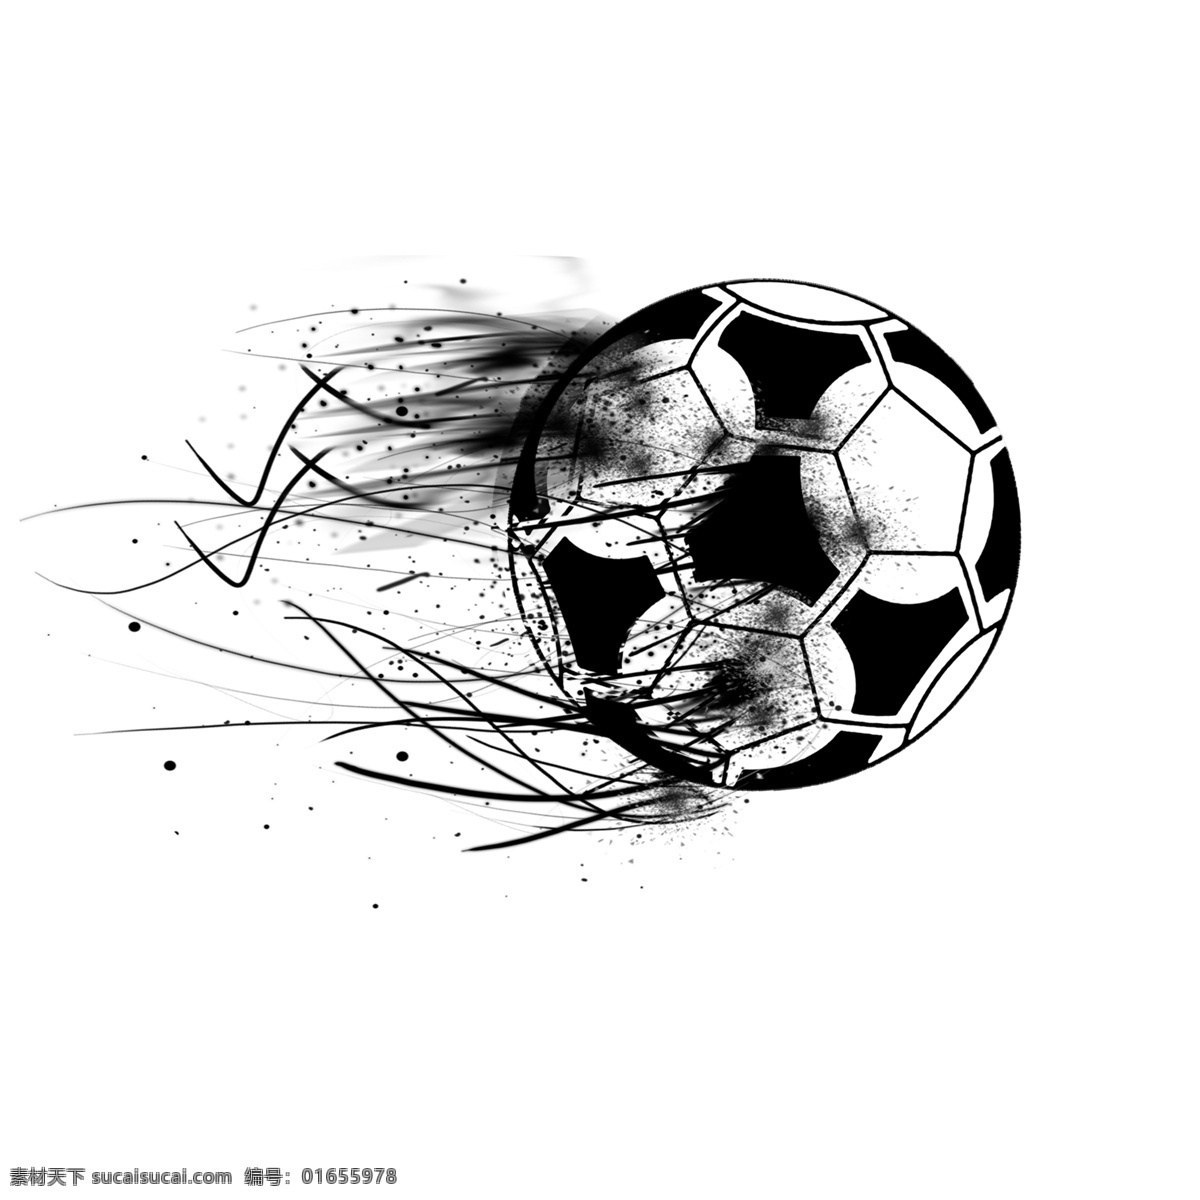 黑白 喷溅 世界杯 创意设计 体育运动 体育比赛 足球比赛 炫彩的世界杯 炫彩足球 炫酷世界杯 世界杯设计